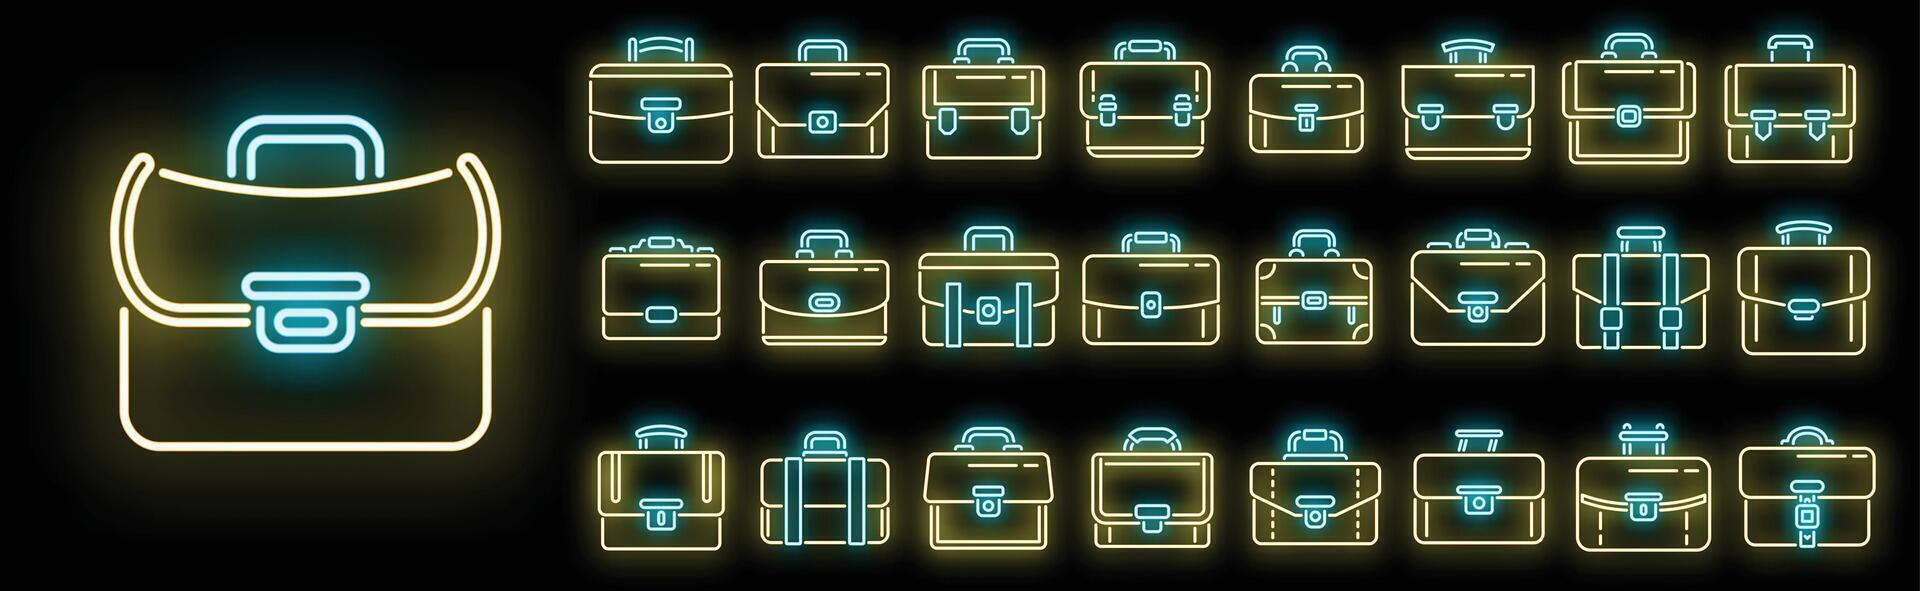 conjunto de ícones de maleta vector neon